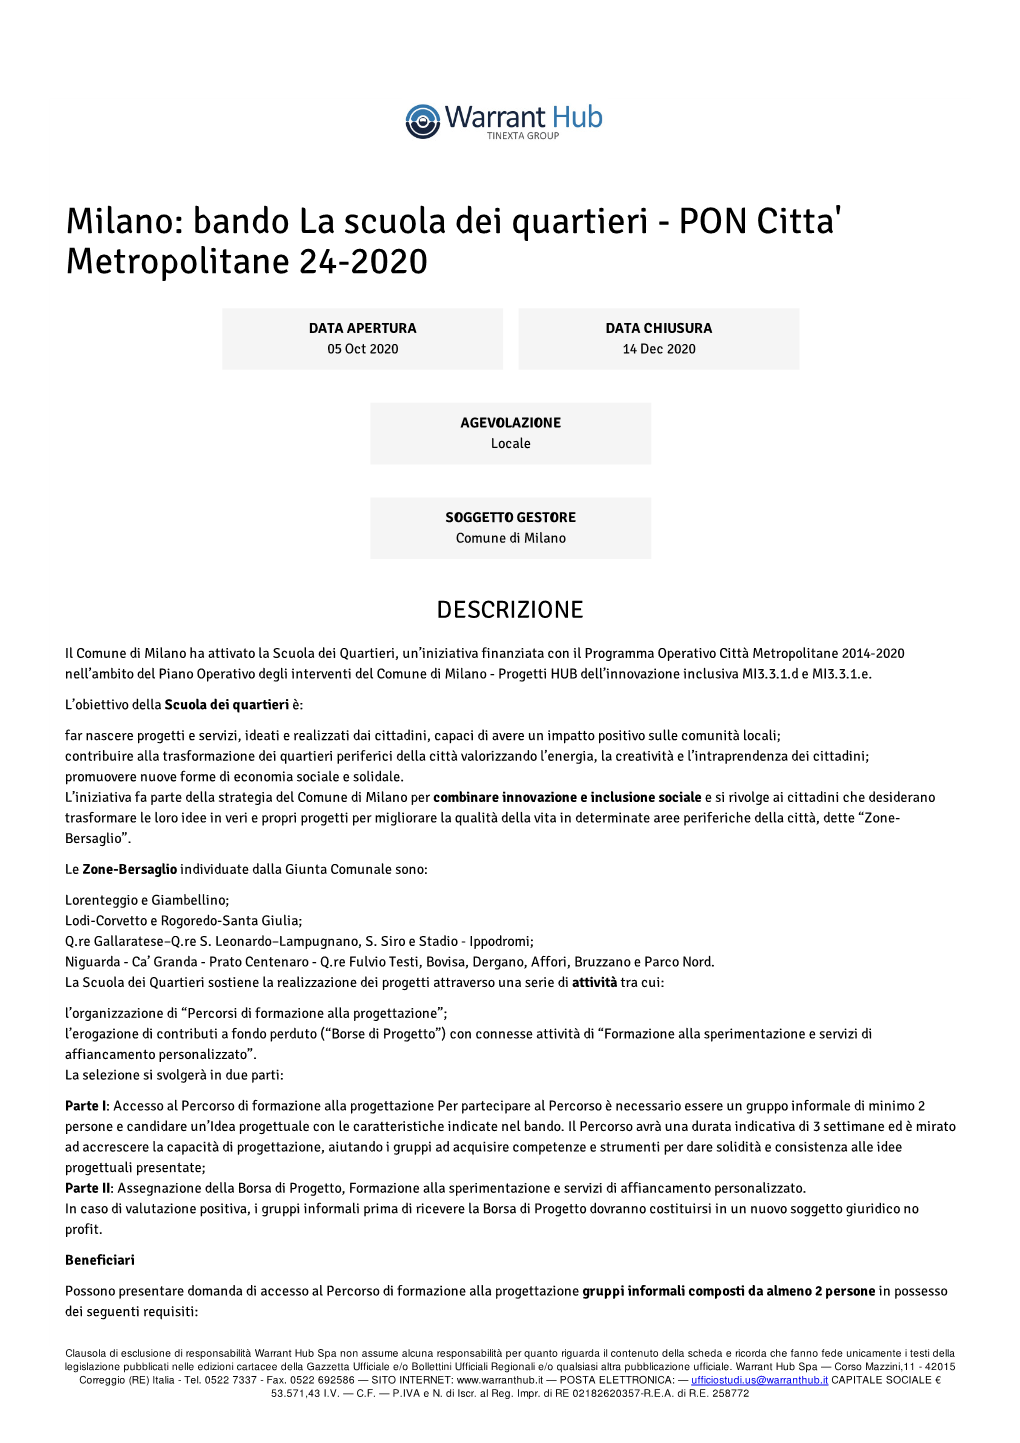 Milano: Bando La Scuola Dei Quartieri - PON Citta' Metropolitane 24-2020